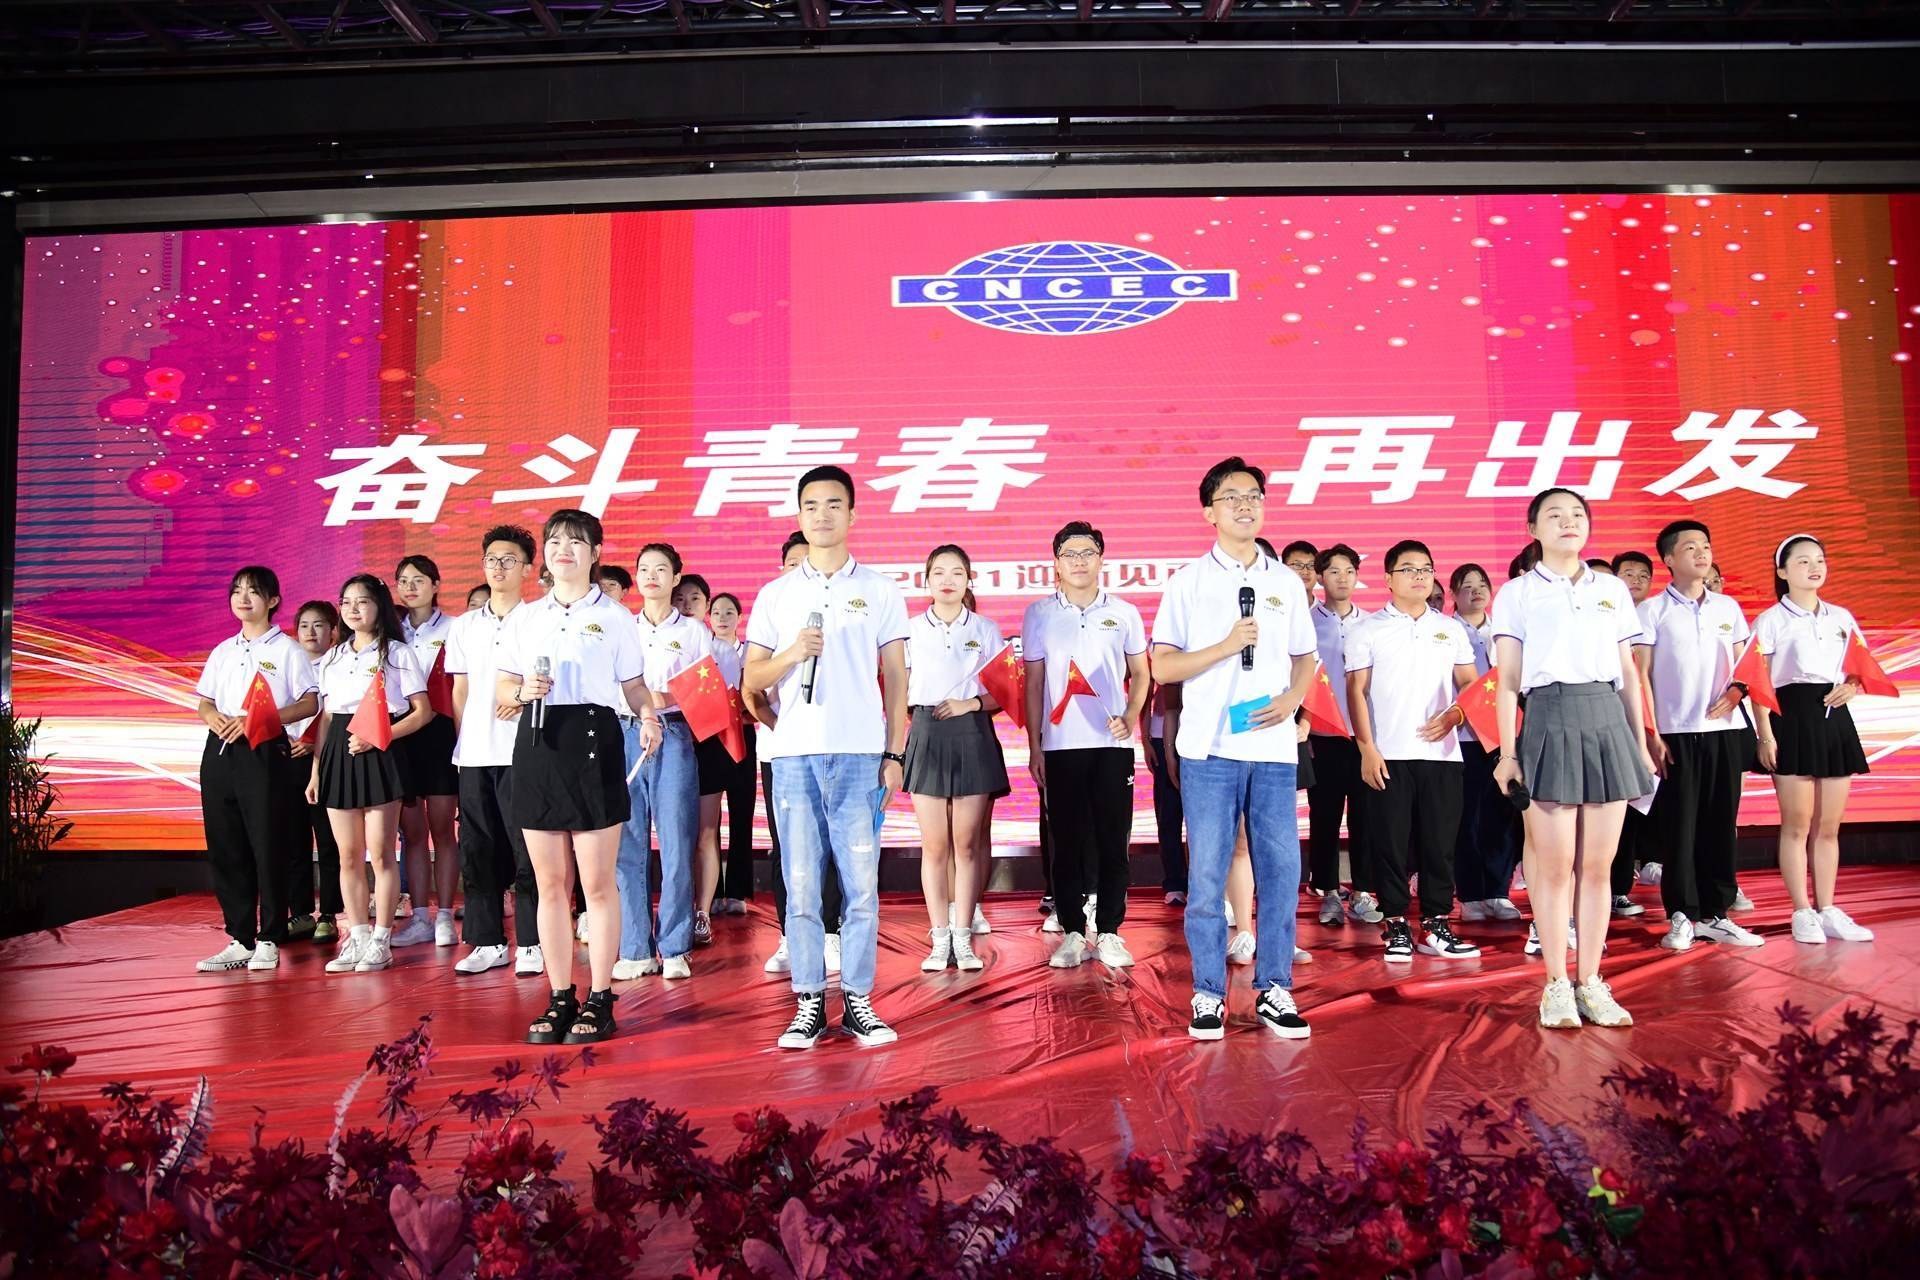  中国化学工程第十一建设有限公司的公司展示